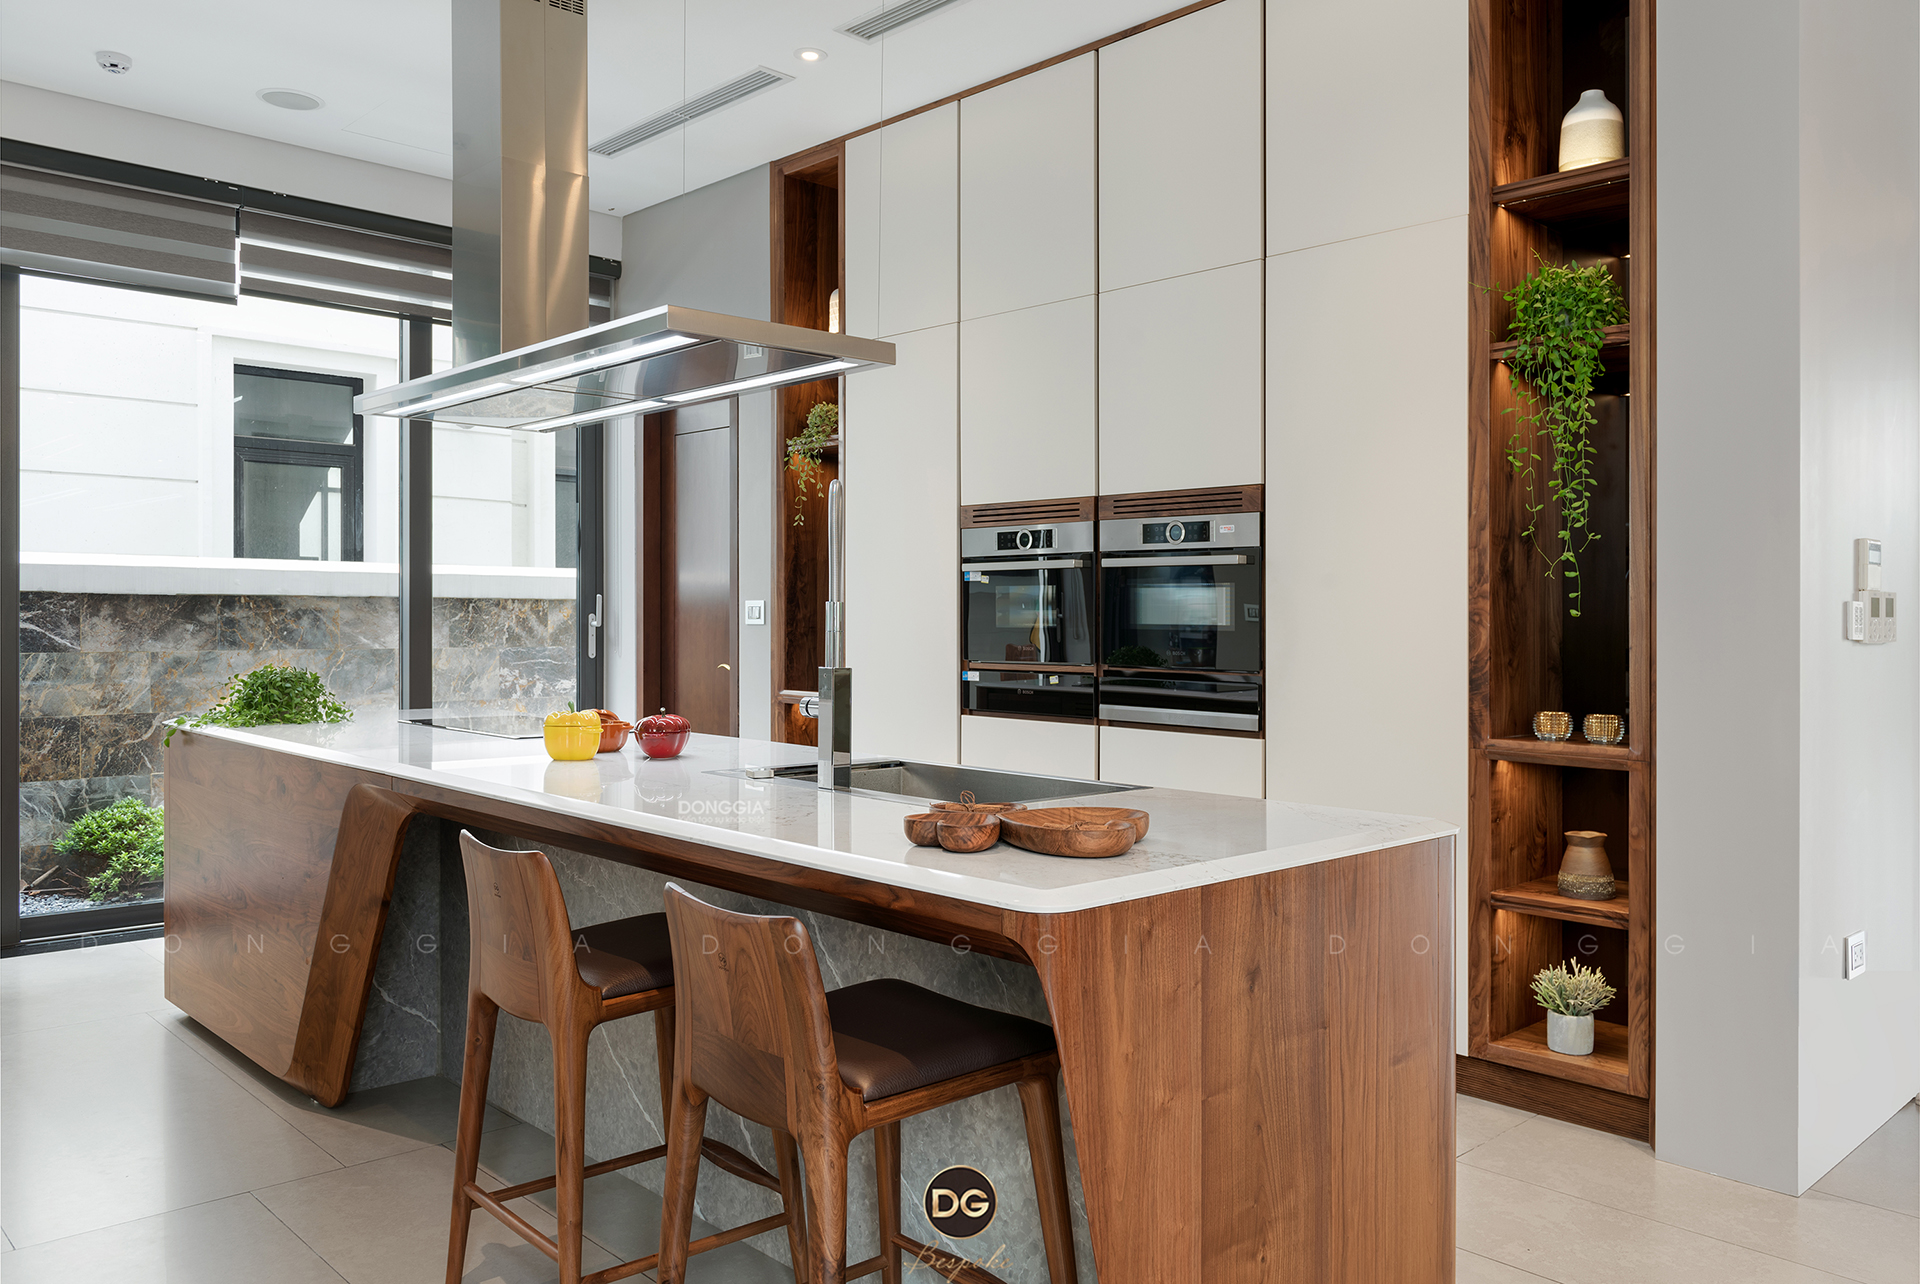 Đảo bếp đẹp với thiết kế thông minh và hiện đại là điểm nhấn của mọi căn nhà. Hình ảnh này sẽ giúp bạn tưởng tượng ra một không gian rộng rãi với nhiều tiện nghi và ấm cúng để có thể nấu ăn và cùng với gia đình thưởng thức món ngon.